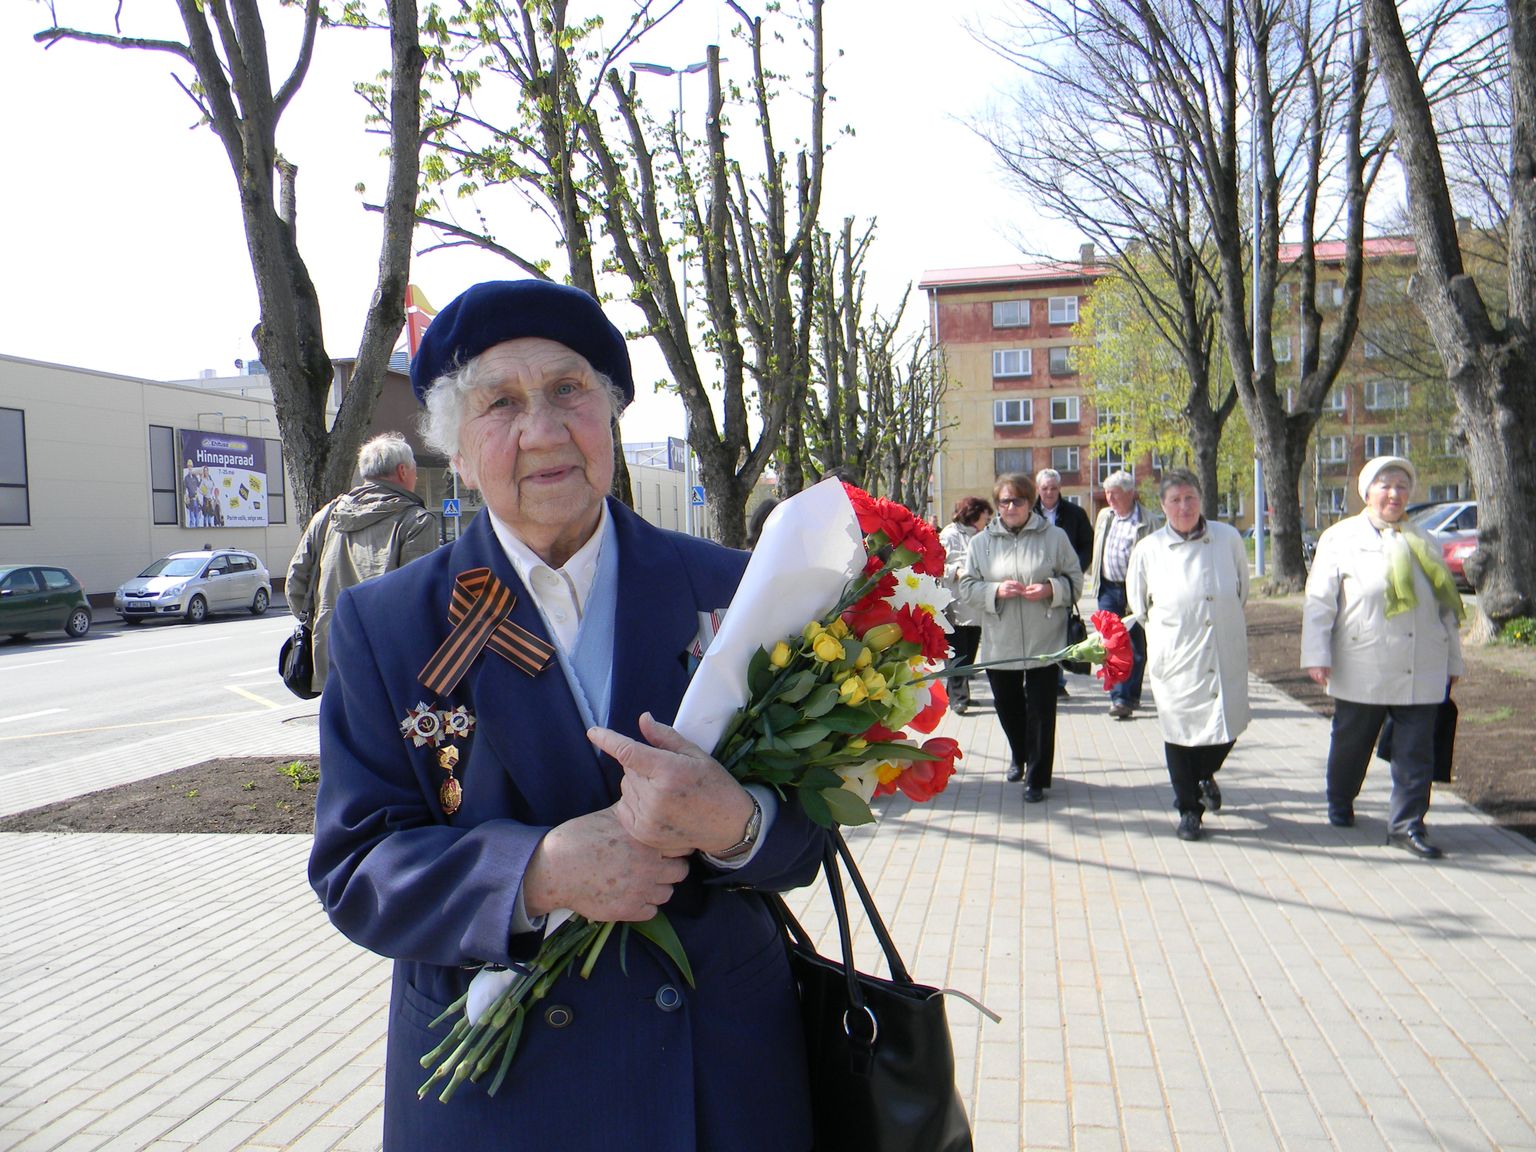 Для 92-летнего ветерана фронта Тамары Николаевны Элксниньш День победы - главный праздник в году.